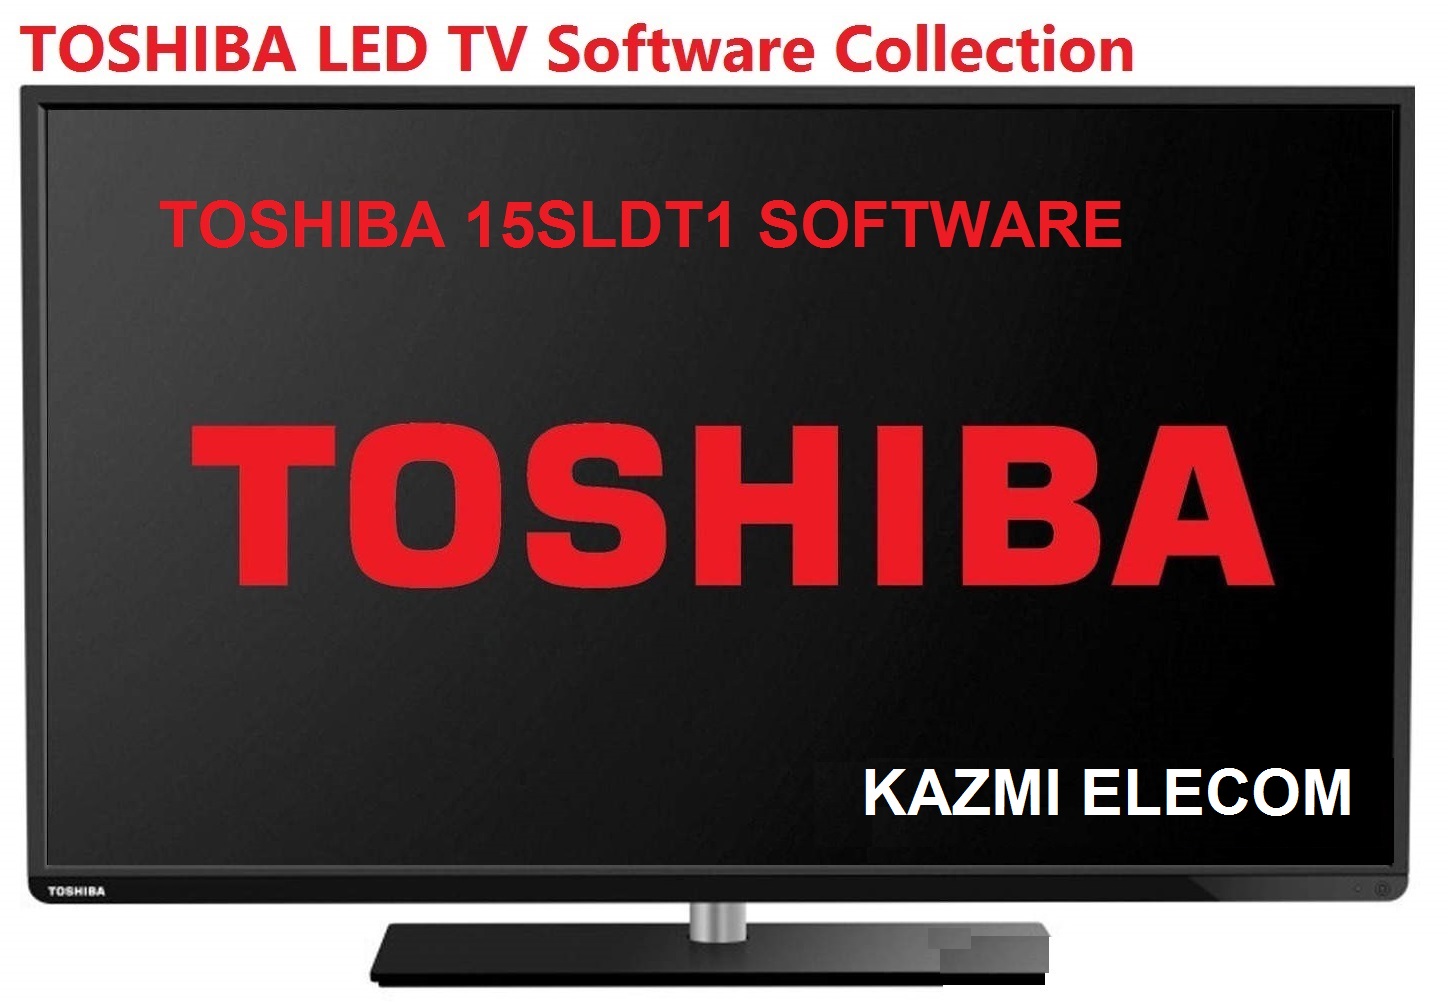 Toshiba 15Sldt1